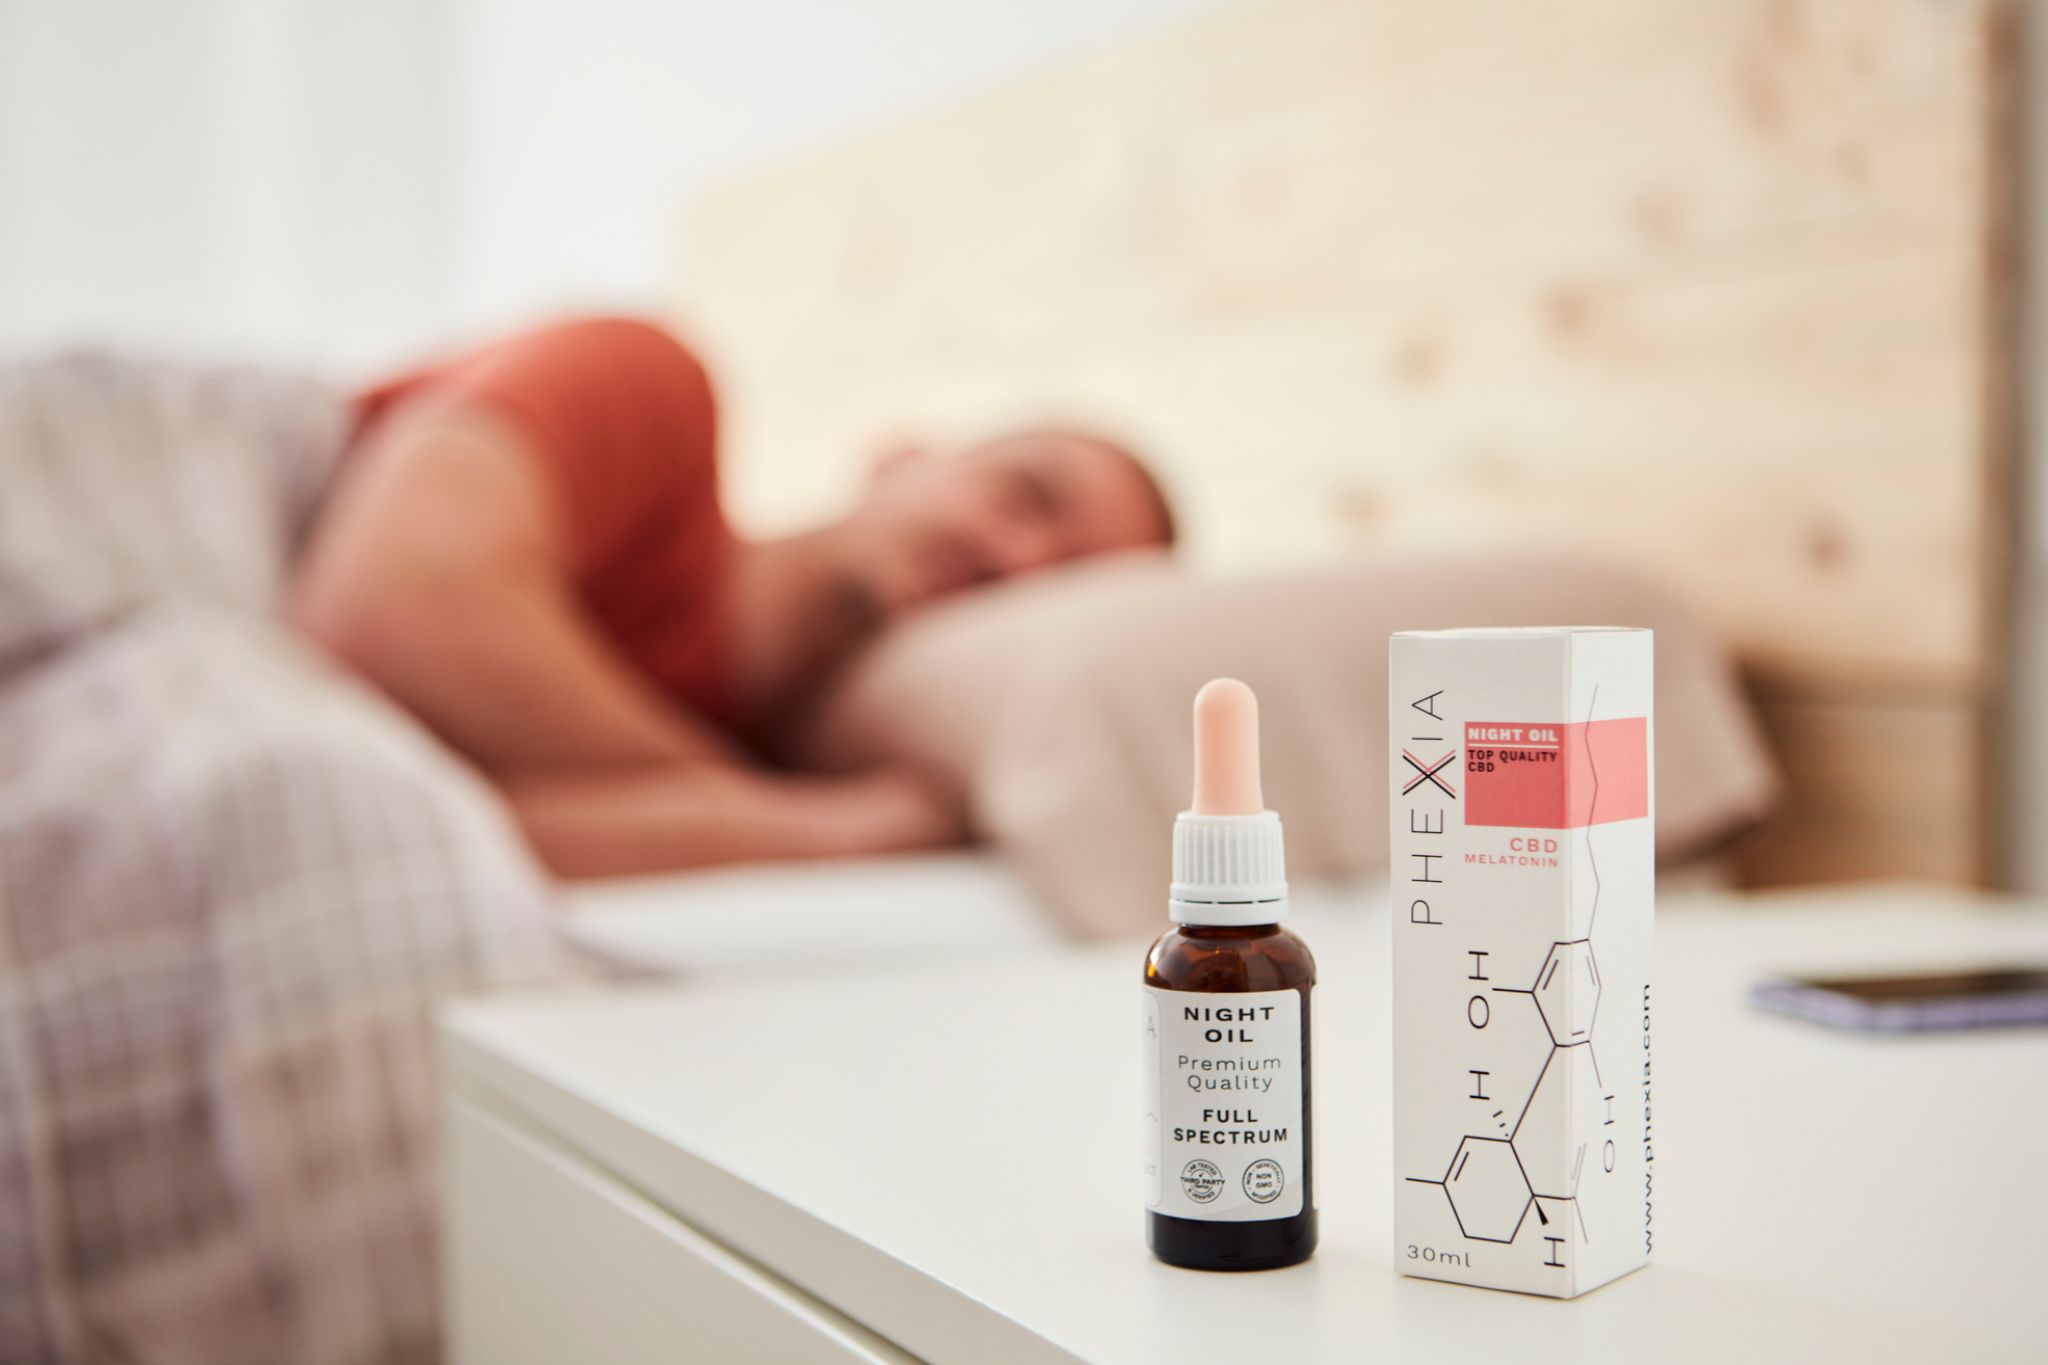 La melatonina en alta concentración con CBD en baja concentración son un remedio infalible para asegurar un buen sueño, aseguran desde Phexia.